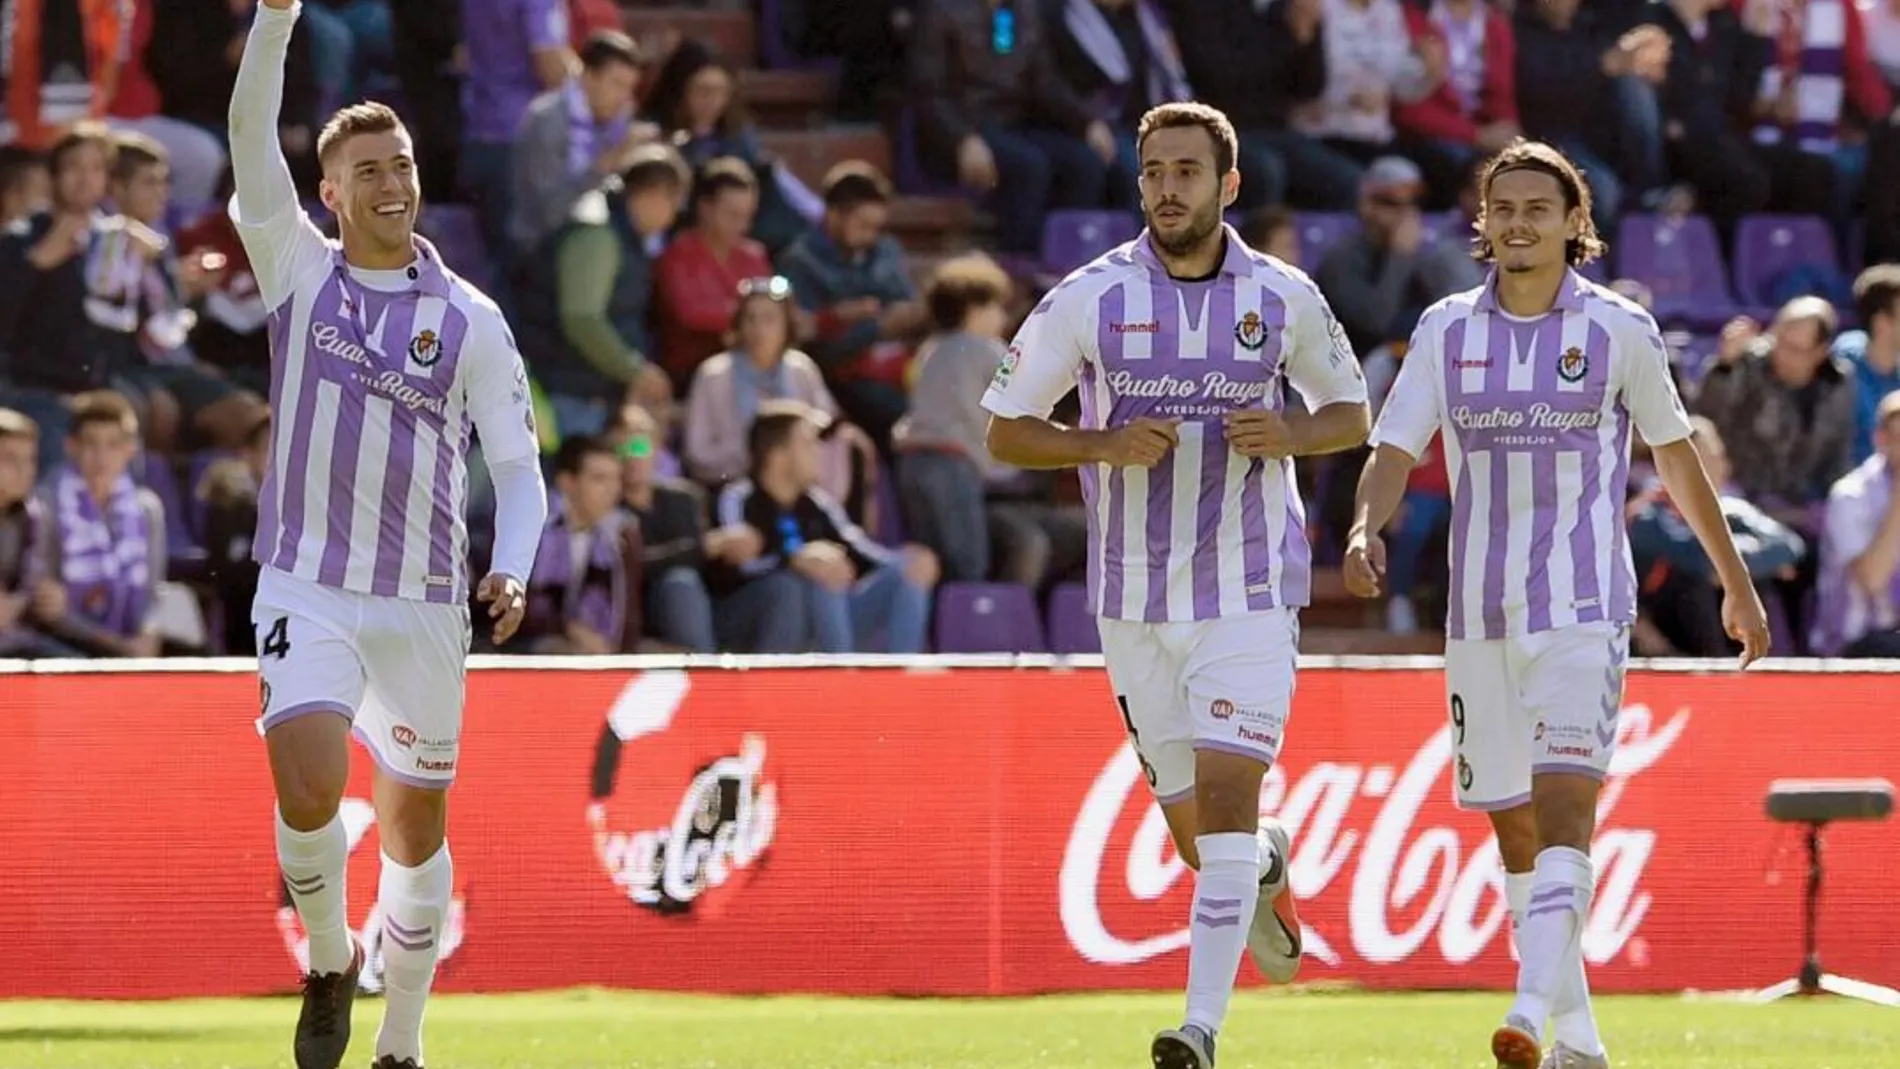 El centrocampista del Real Valladolid, Rubén Alcaraz, celebra el que a la postre fue el único tanto del partido